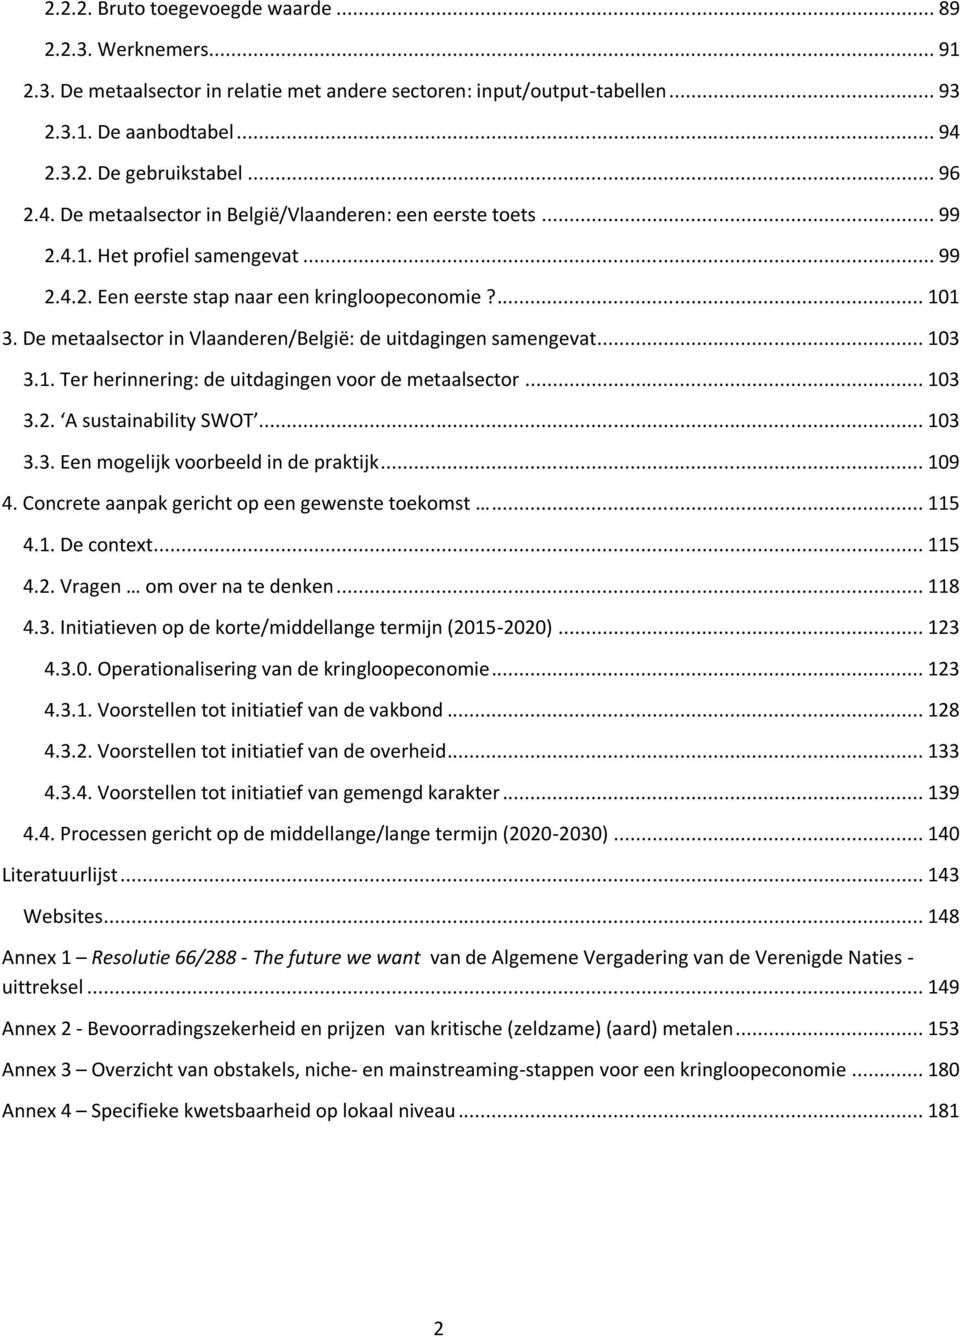 De metaalsector in Vlaanderen/België: de uitdagingen samengevat... 103 3.1. Ter herinnering: de uitdagingen voor de metaalsector... 103 3.2. A sustainability SWOT... 103 3.3. Een mogelijk voorbeeld in de praktijk.